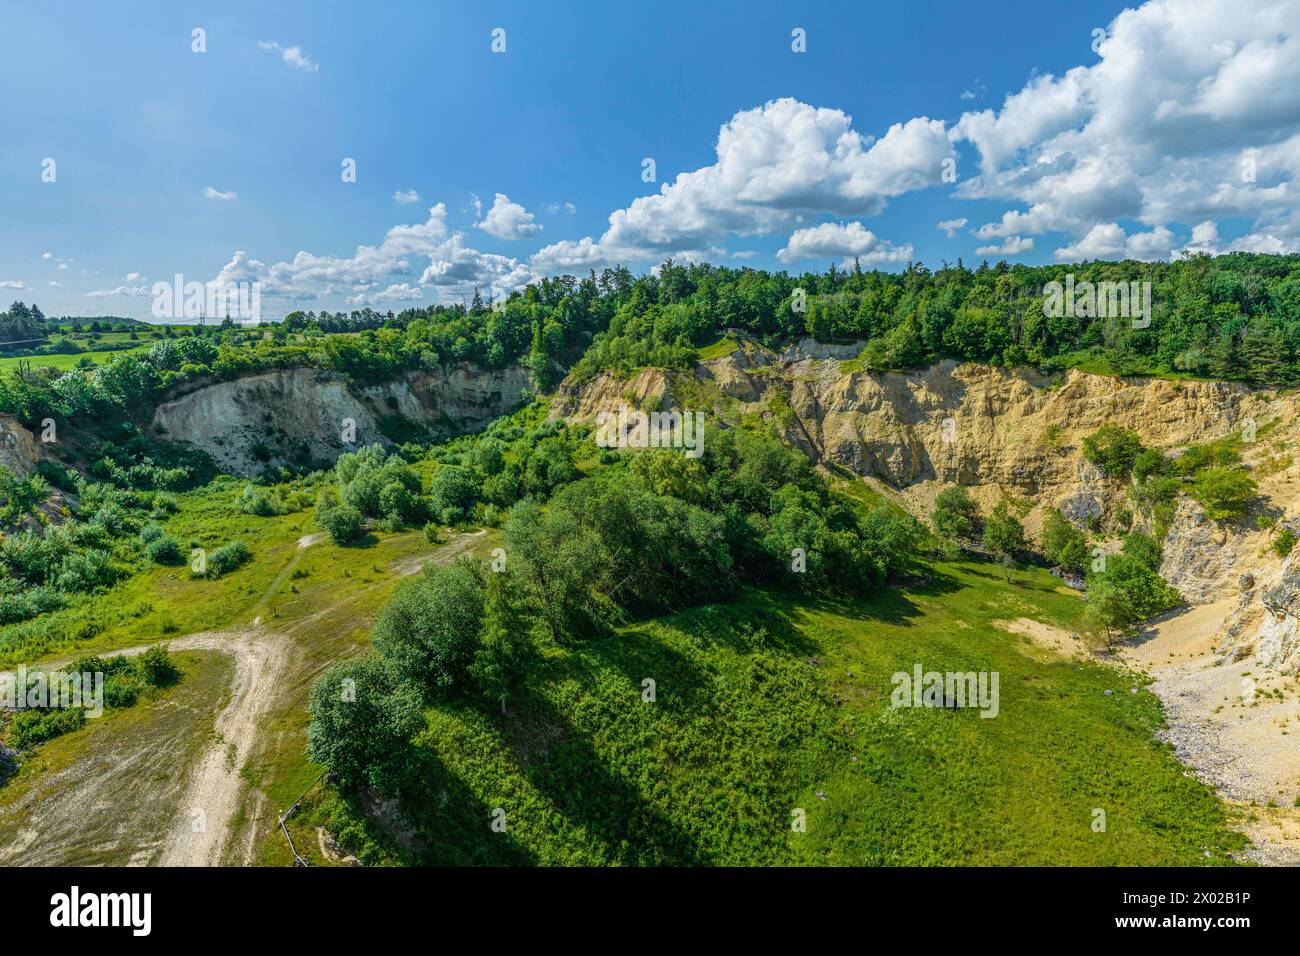 Ausblick auf den Erlebnissteinbruch Lindle bei Holheim am südlichen Kraterrand des Nördlinger Ries Geopark Ries - Blick in den Erlebnis-Steinbruch Lin Stock Photo